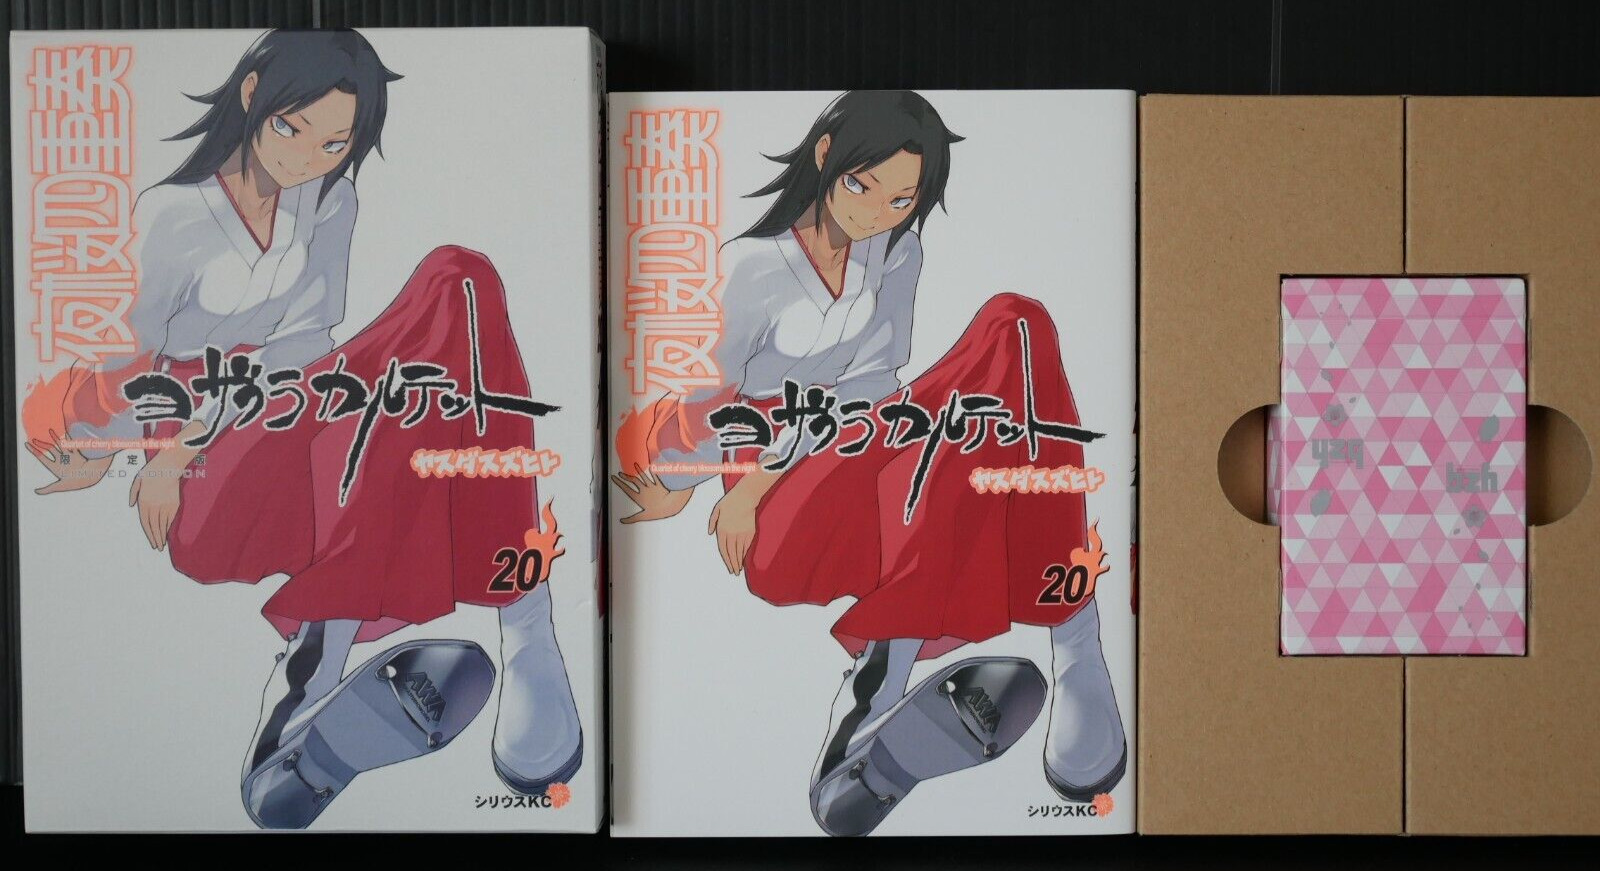 SHOHAN: Yozakura Quartet Vol.20 Manga Limited Edition by Suzuhito Yasuda